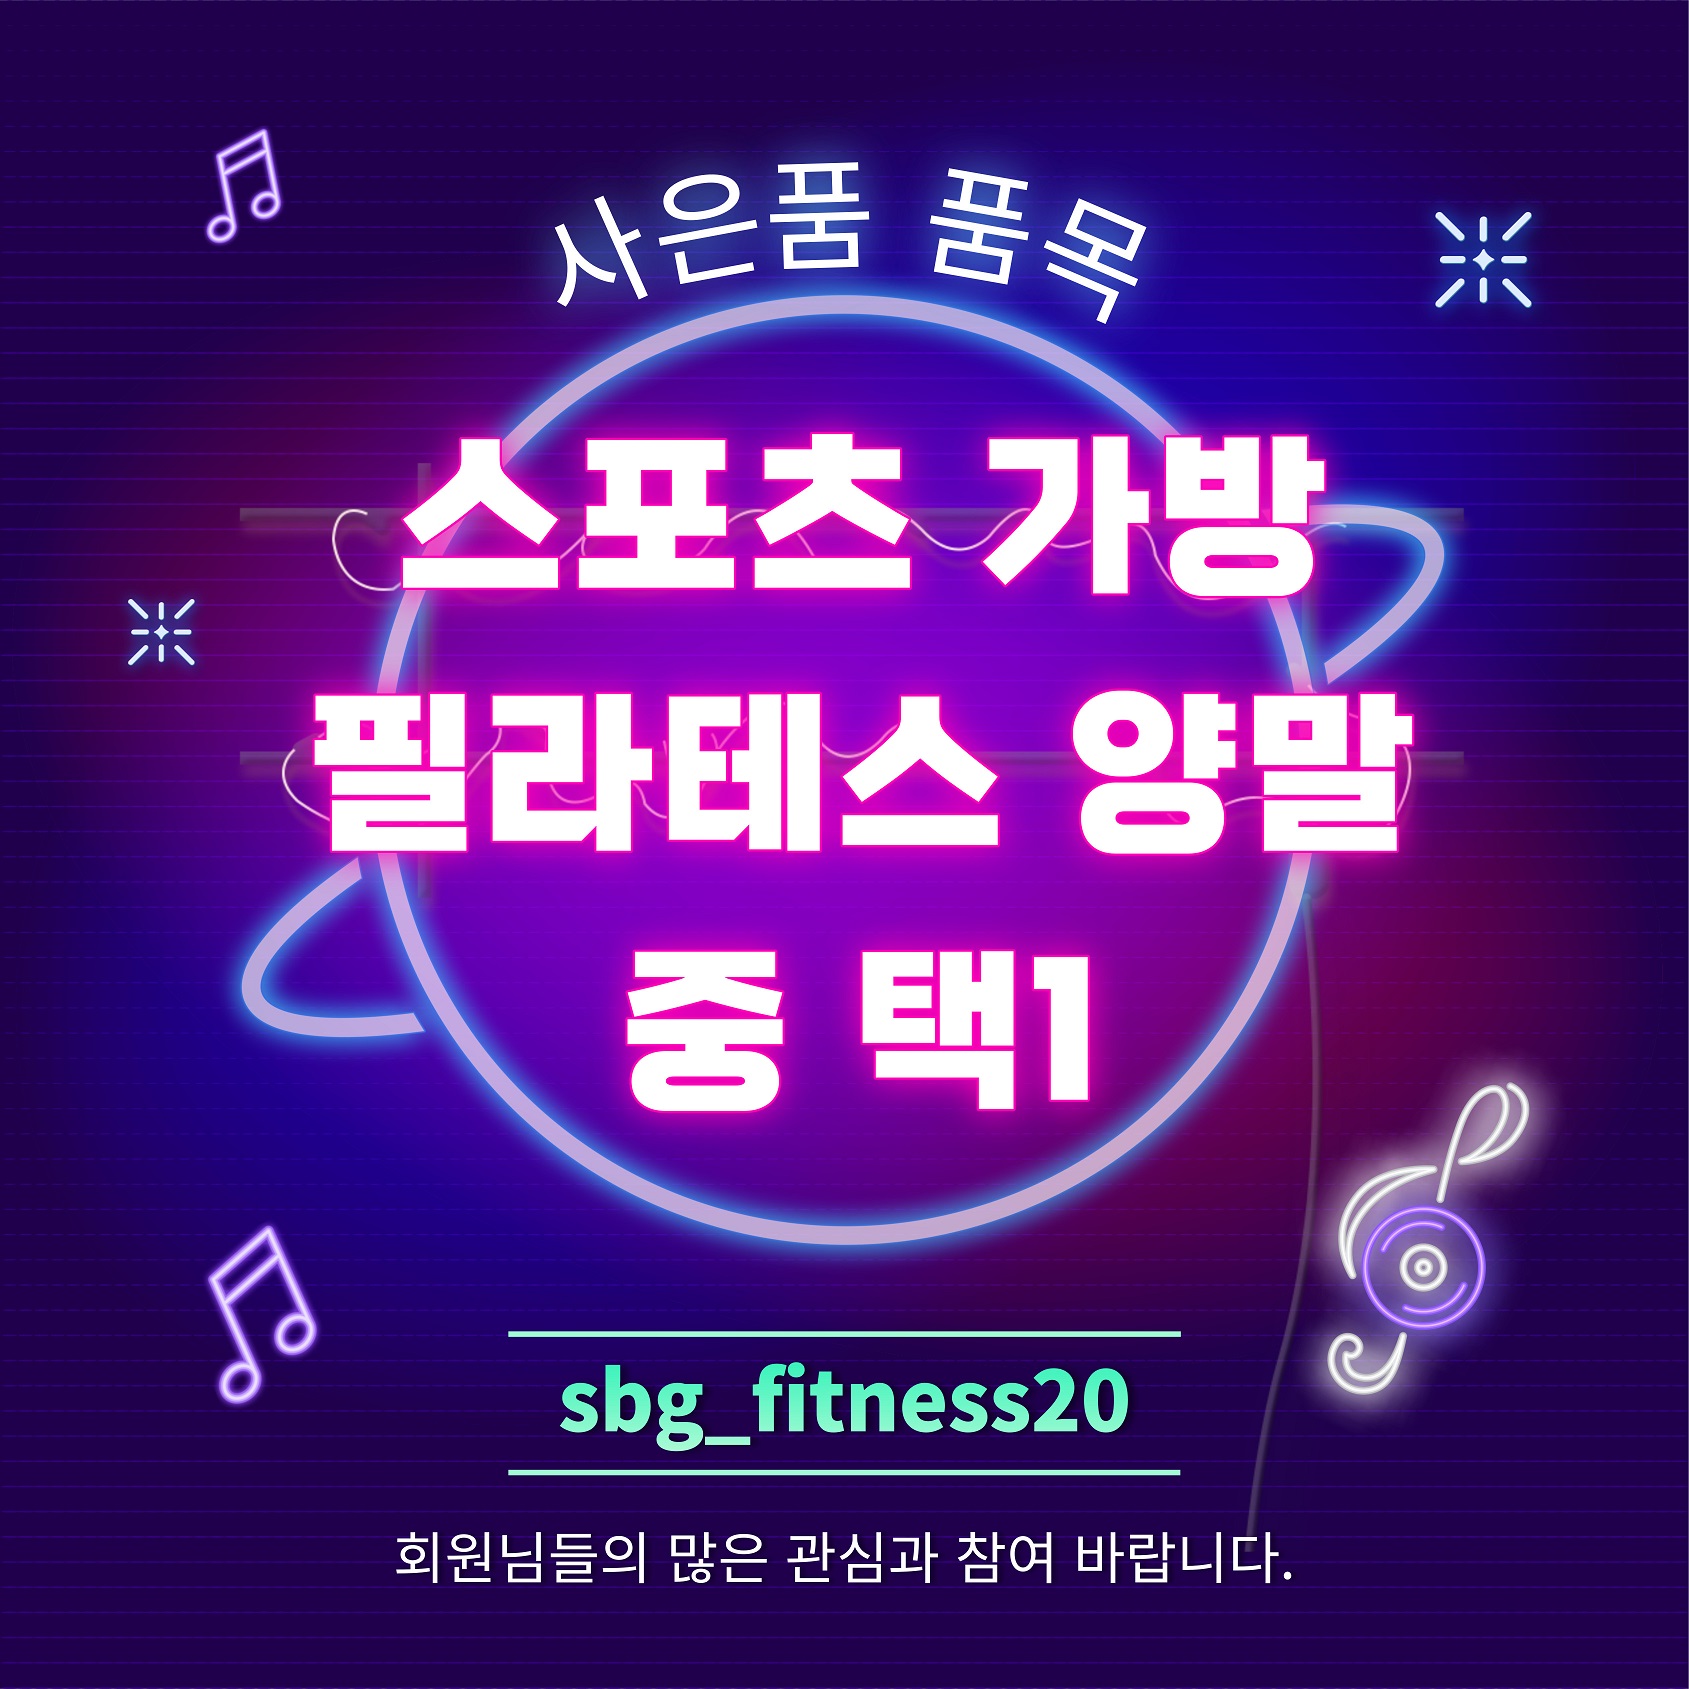 사은품 품목
스포츠 가방
필라테스 양말
중 택1
sbg_fitness20
회원님들의 많은 관심과 참여 바랍니다.